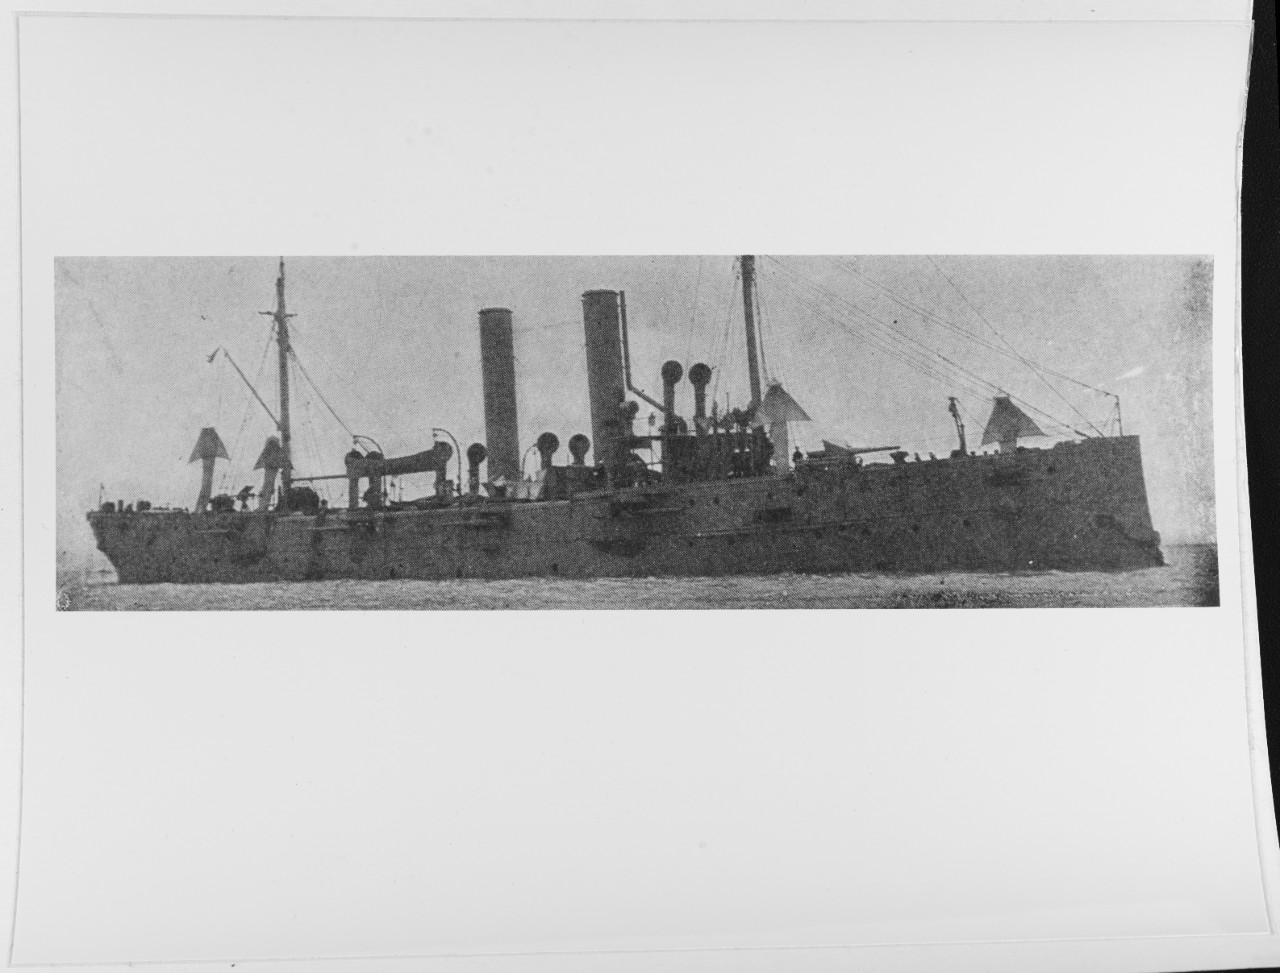 USS MARBLEHEAD (C-11)